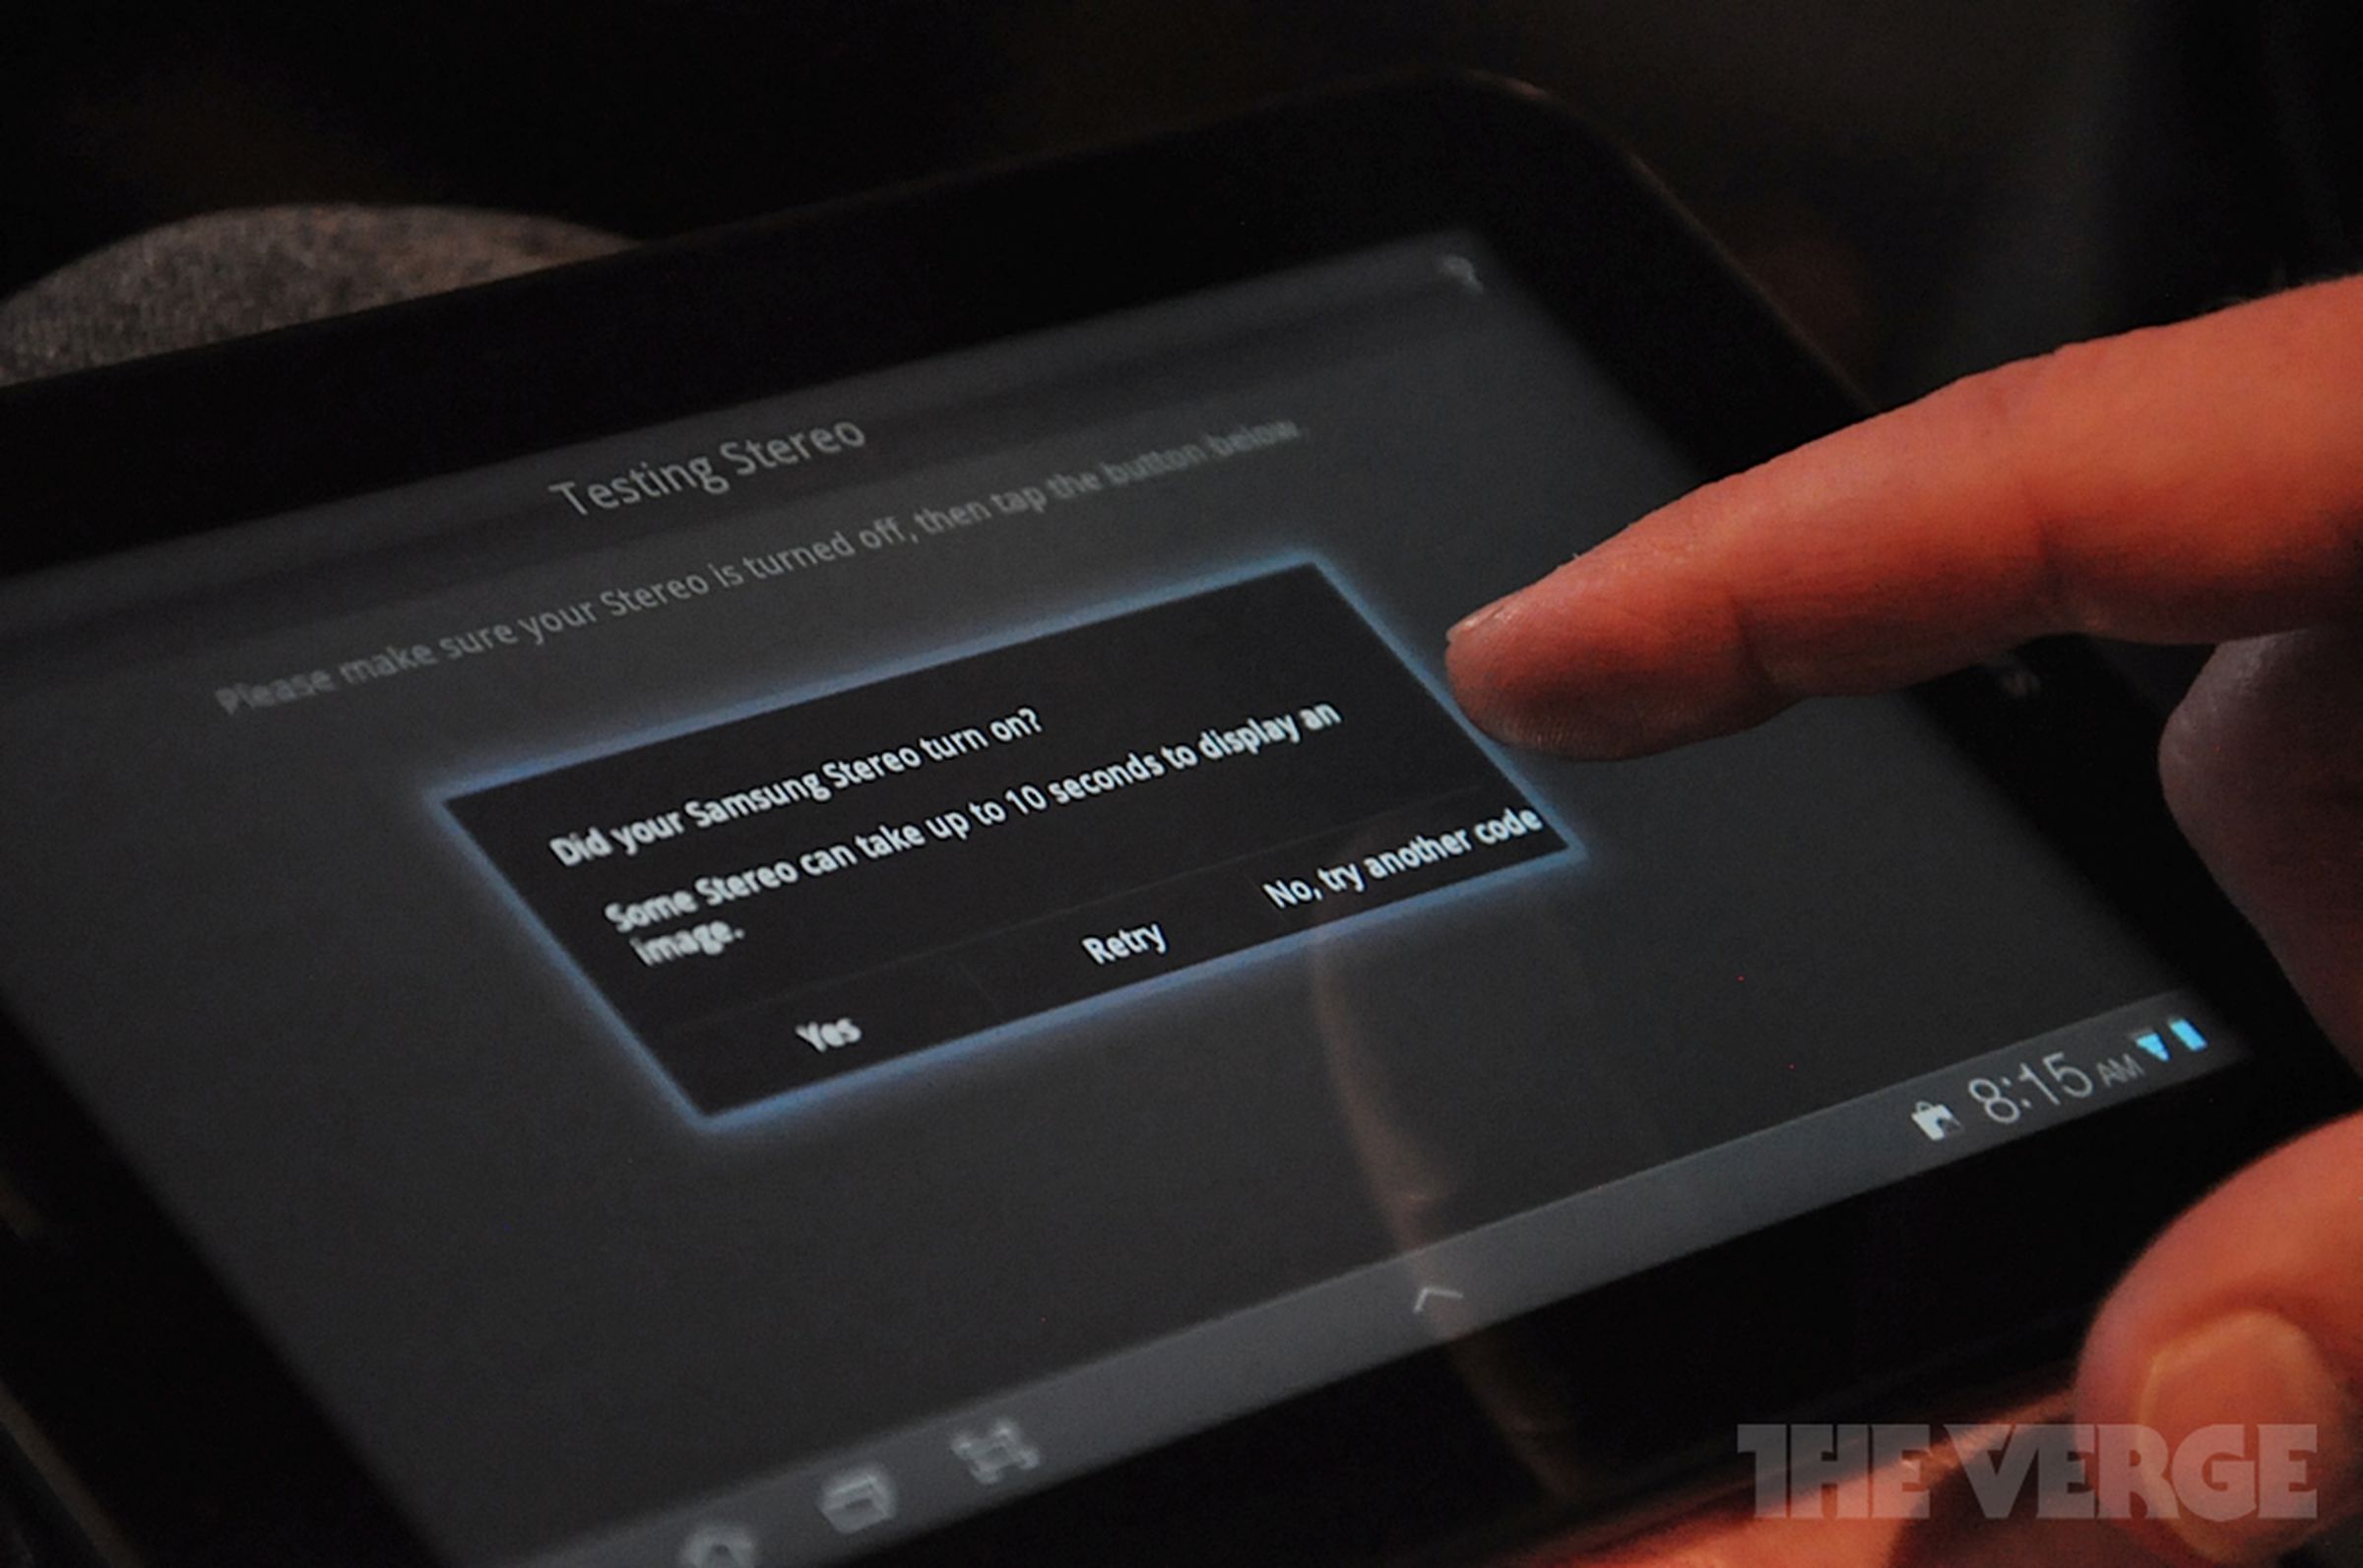 Peel Smart Remote on Galaxy Tab 7.0 Plus demo